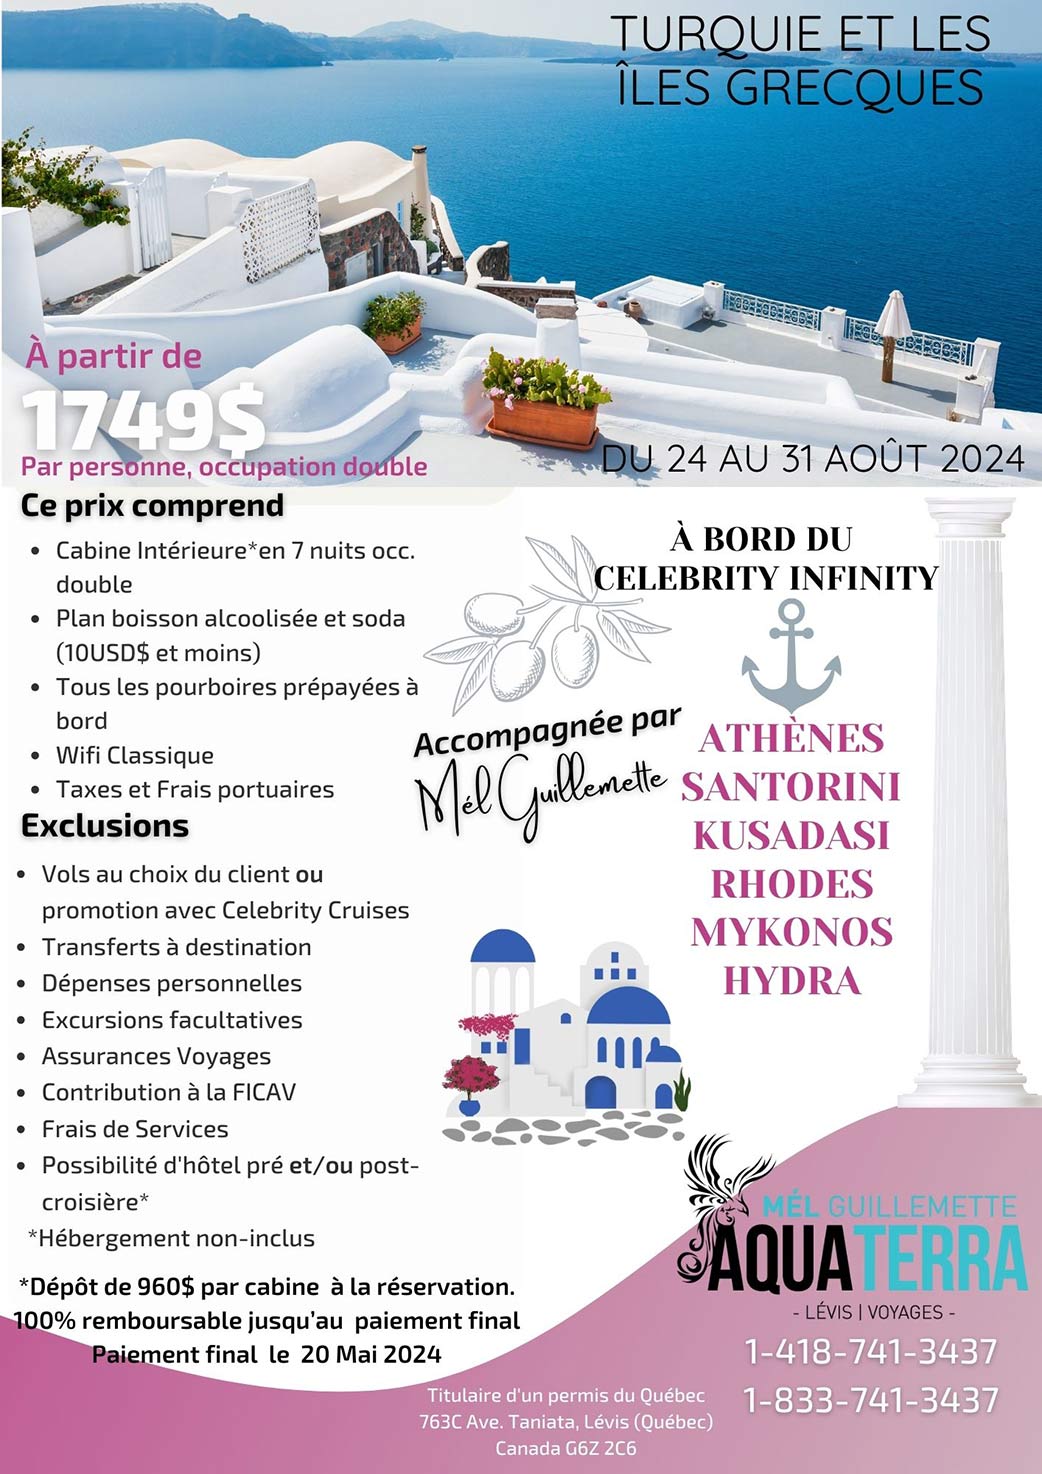 Croisière  en Turquie sur le Celebrity Infinity, du 24 au 31 août 2024